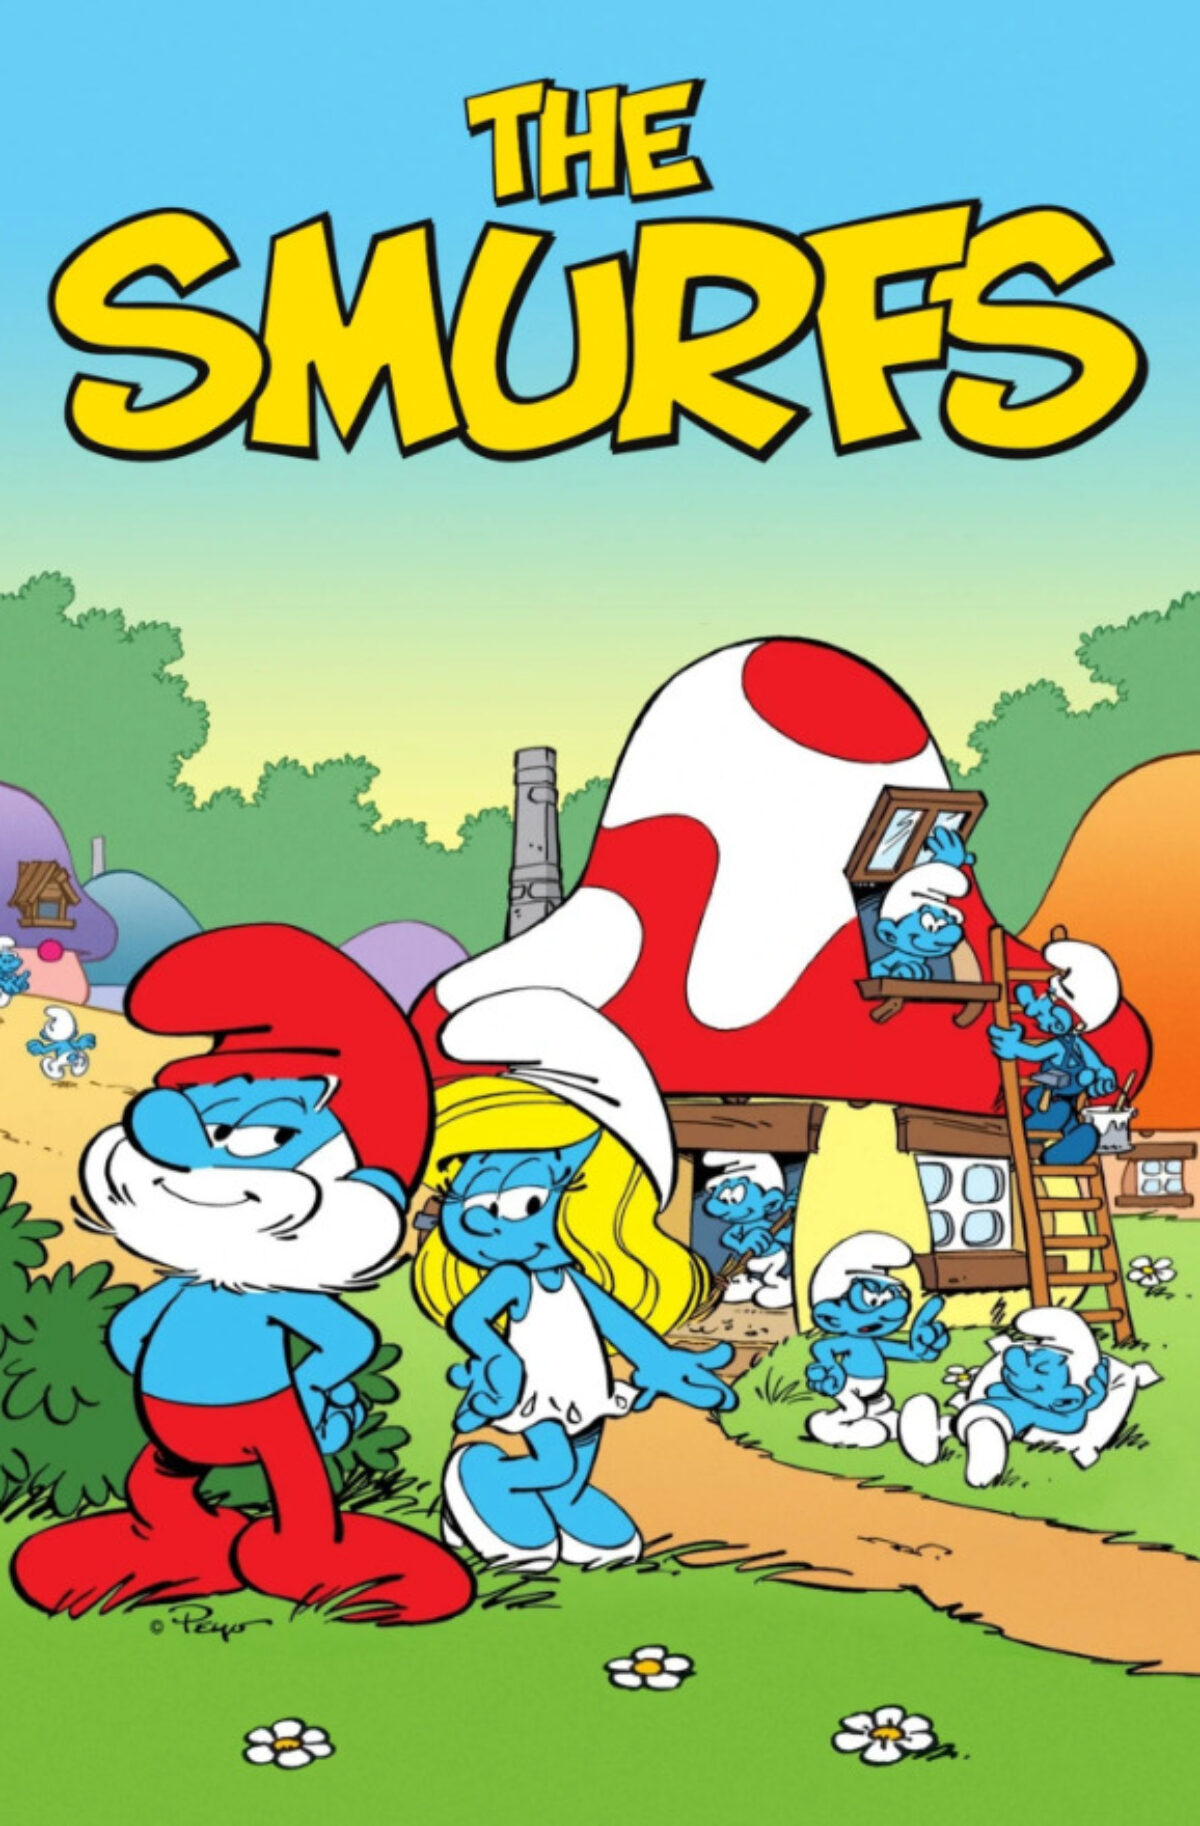 Los Pitufos (The Smurfs) y su escalofriante historia detrás - Cínicos de  Sinope